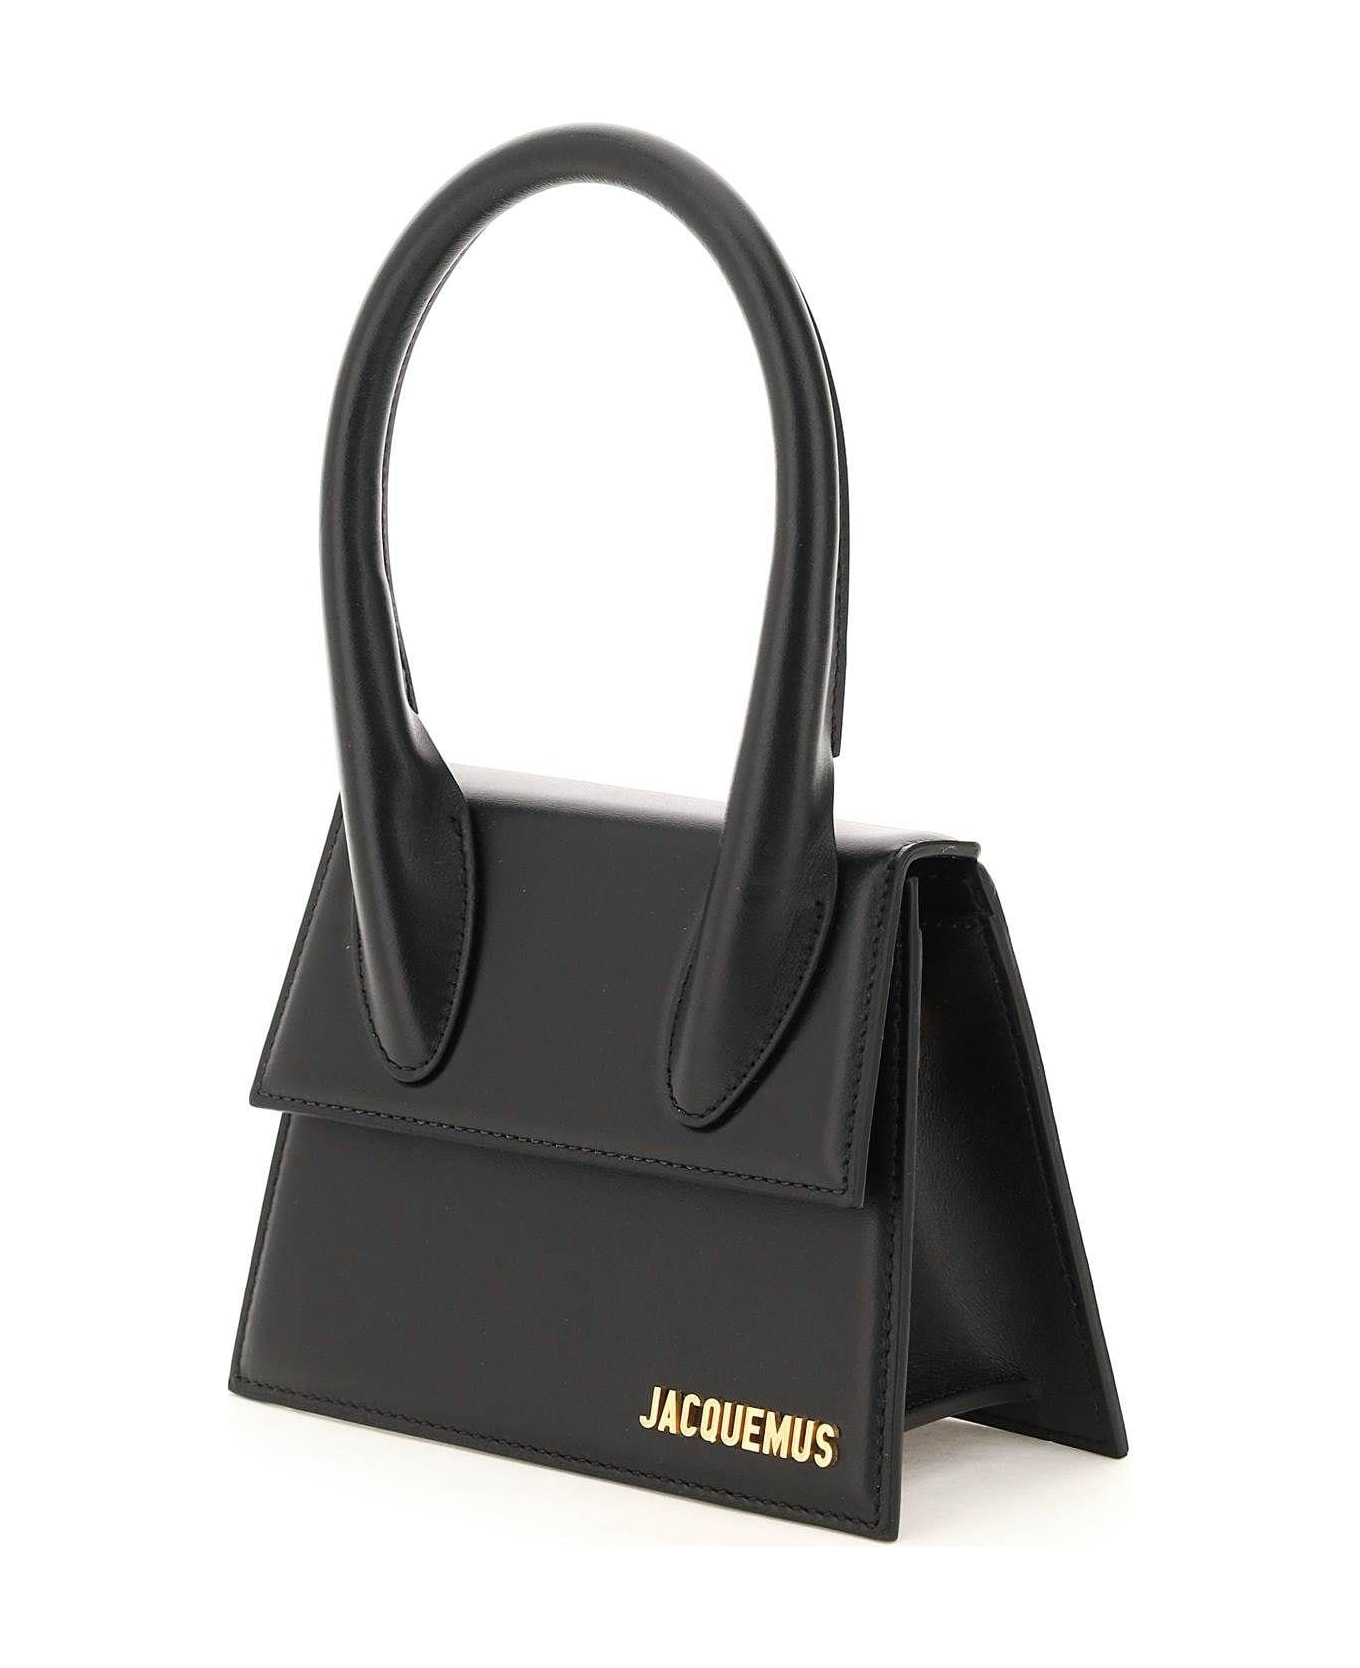 Jacquemus 'le Chiquito' Micro Bag - BLACK